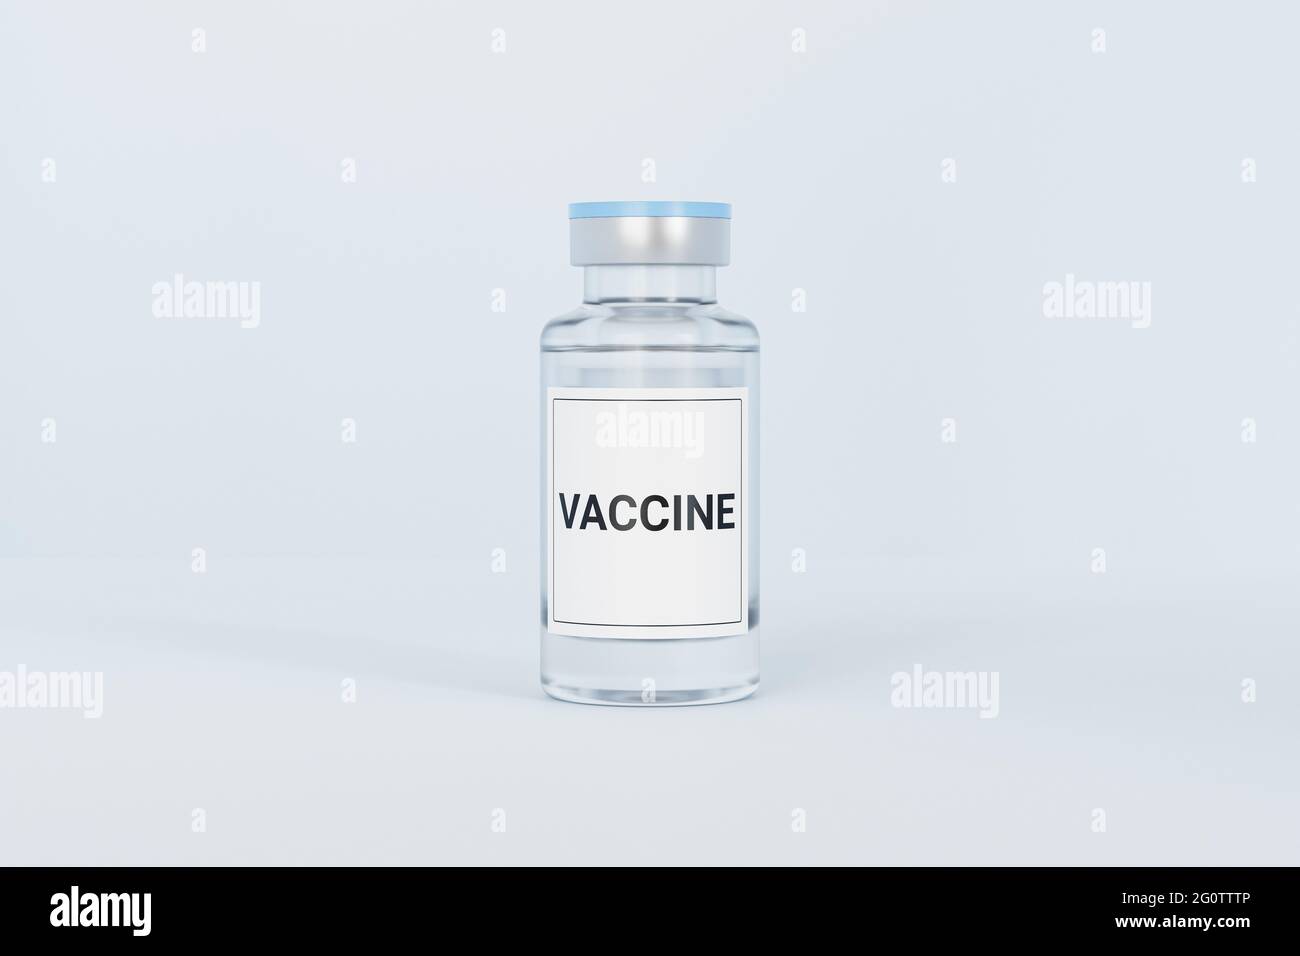 Flacon en verre à ampoule de vaccin avec étiquette isolée sur fond clair, rendu 3d Banque D'Images